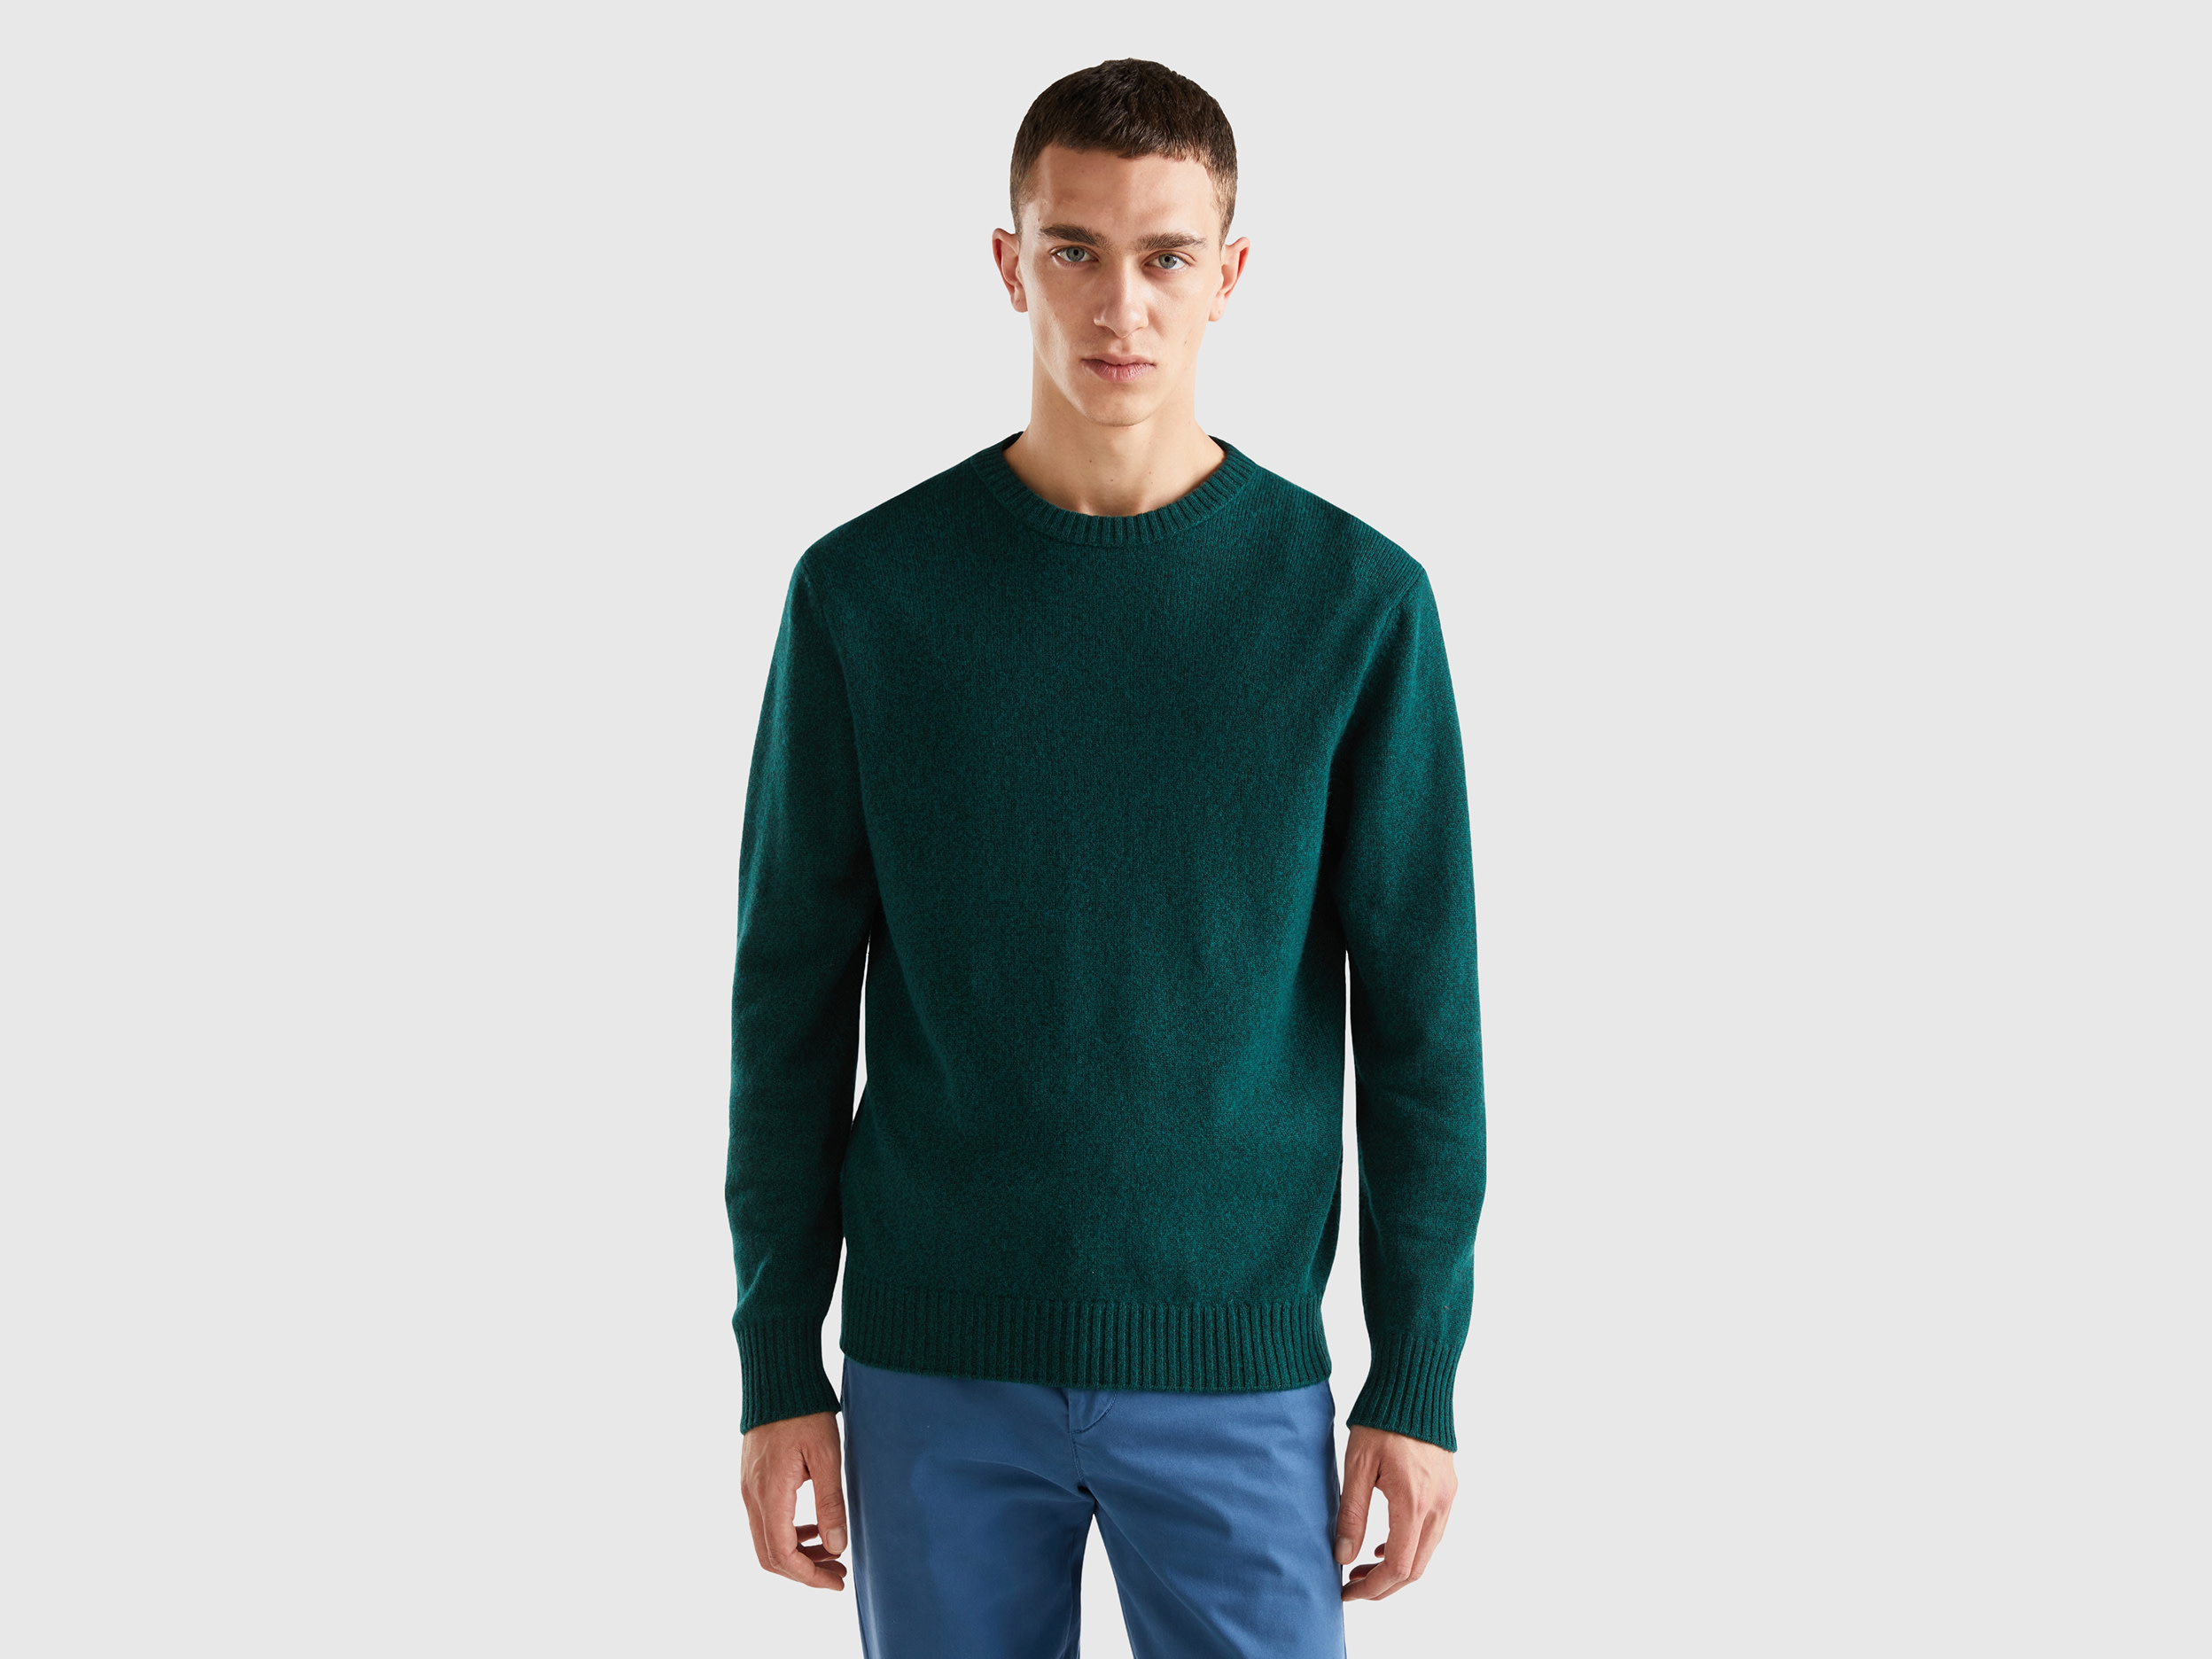 Benetton, Crew Neck Sweater In Cashmere And Wool Blend, size XXL, Dark Green, Men